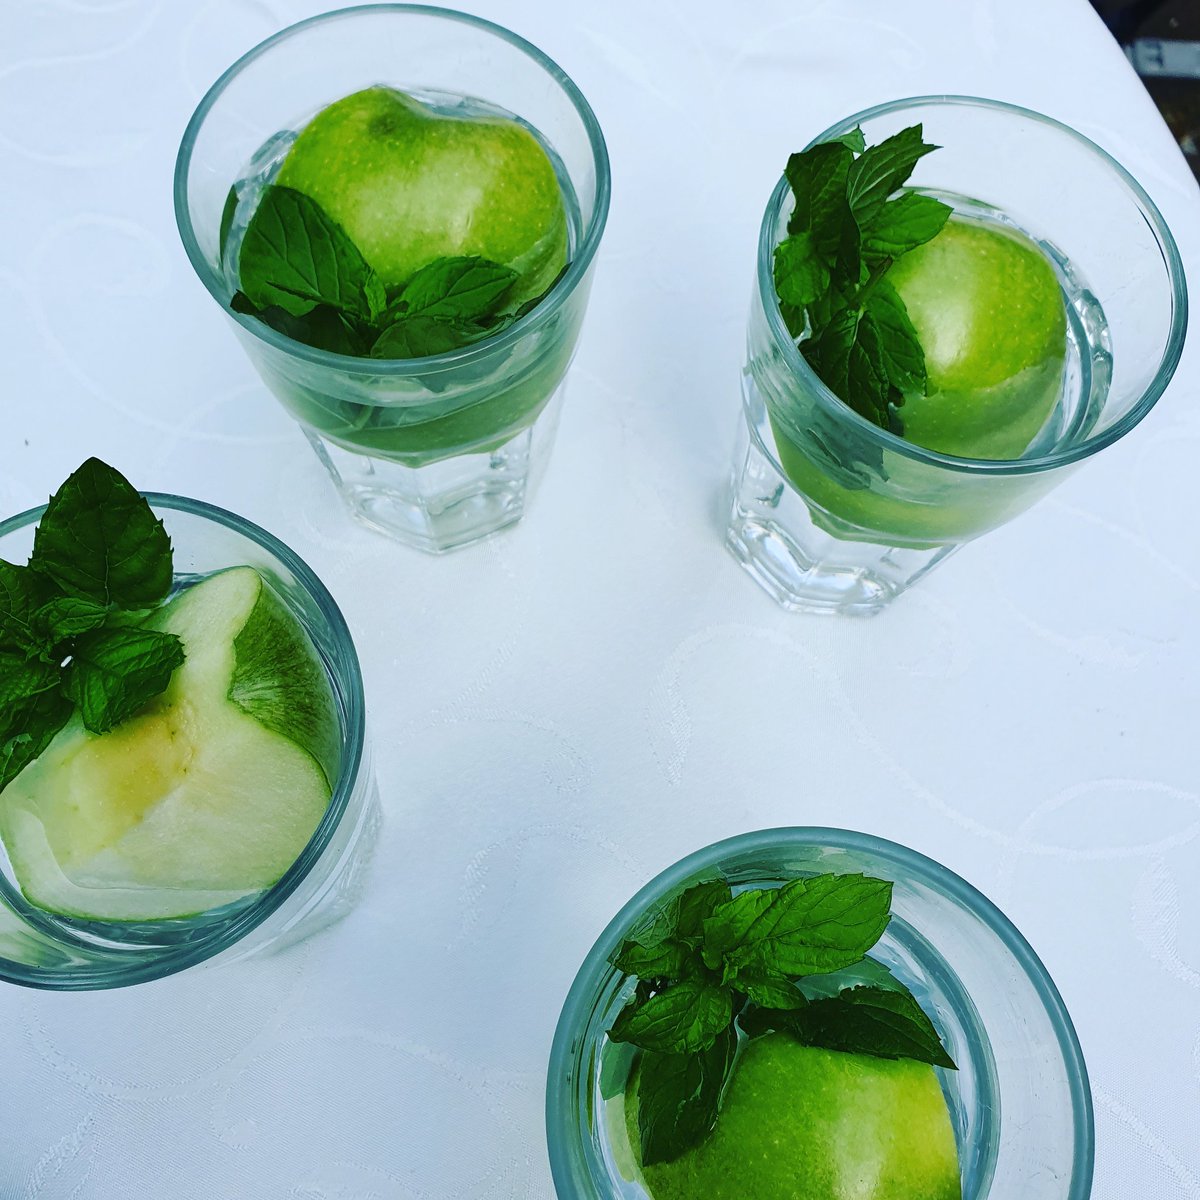 Gün boyu içebileceğiniz #detoks ve zayıflamaya yardımcı yaz içeceği : 1 litre su ,içine dilim yeşil elma,taze nane ve 10 çeyrek limon suyu #yeşilelma #zayıflama #alkalisu #tazenane